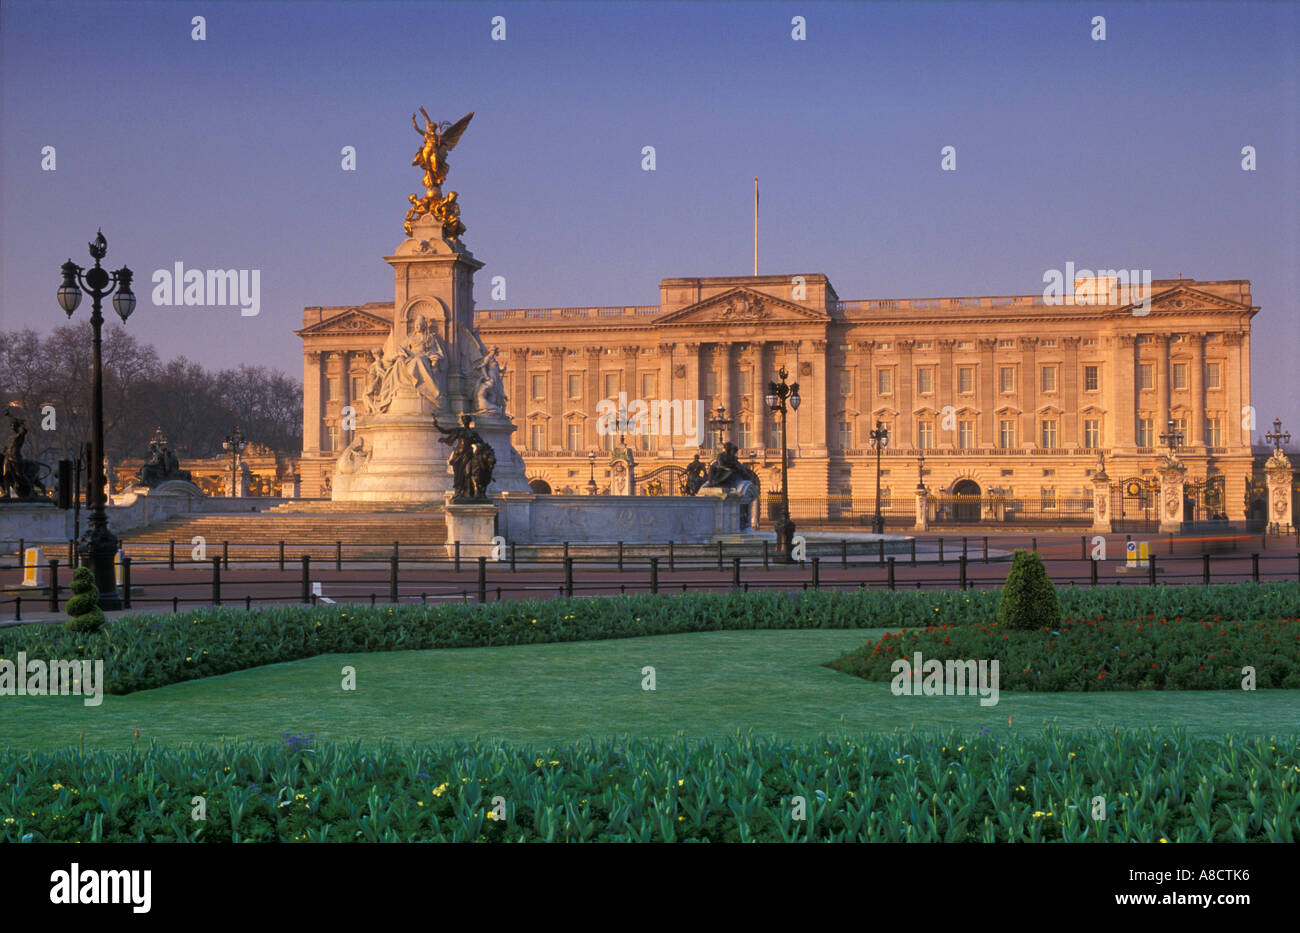 Buckingham Palace London England UK Stock Photo